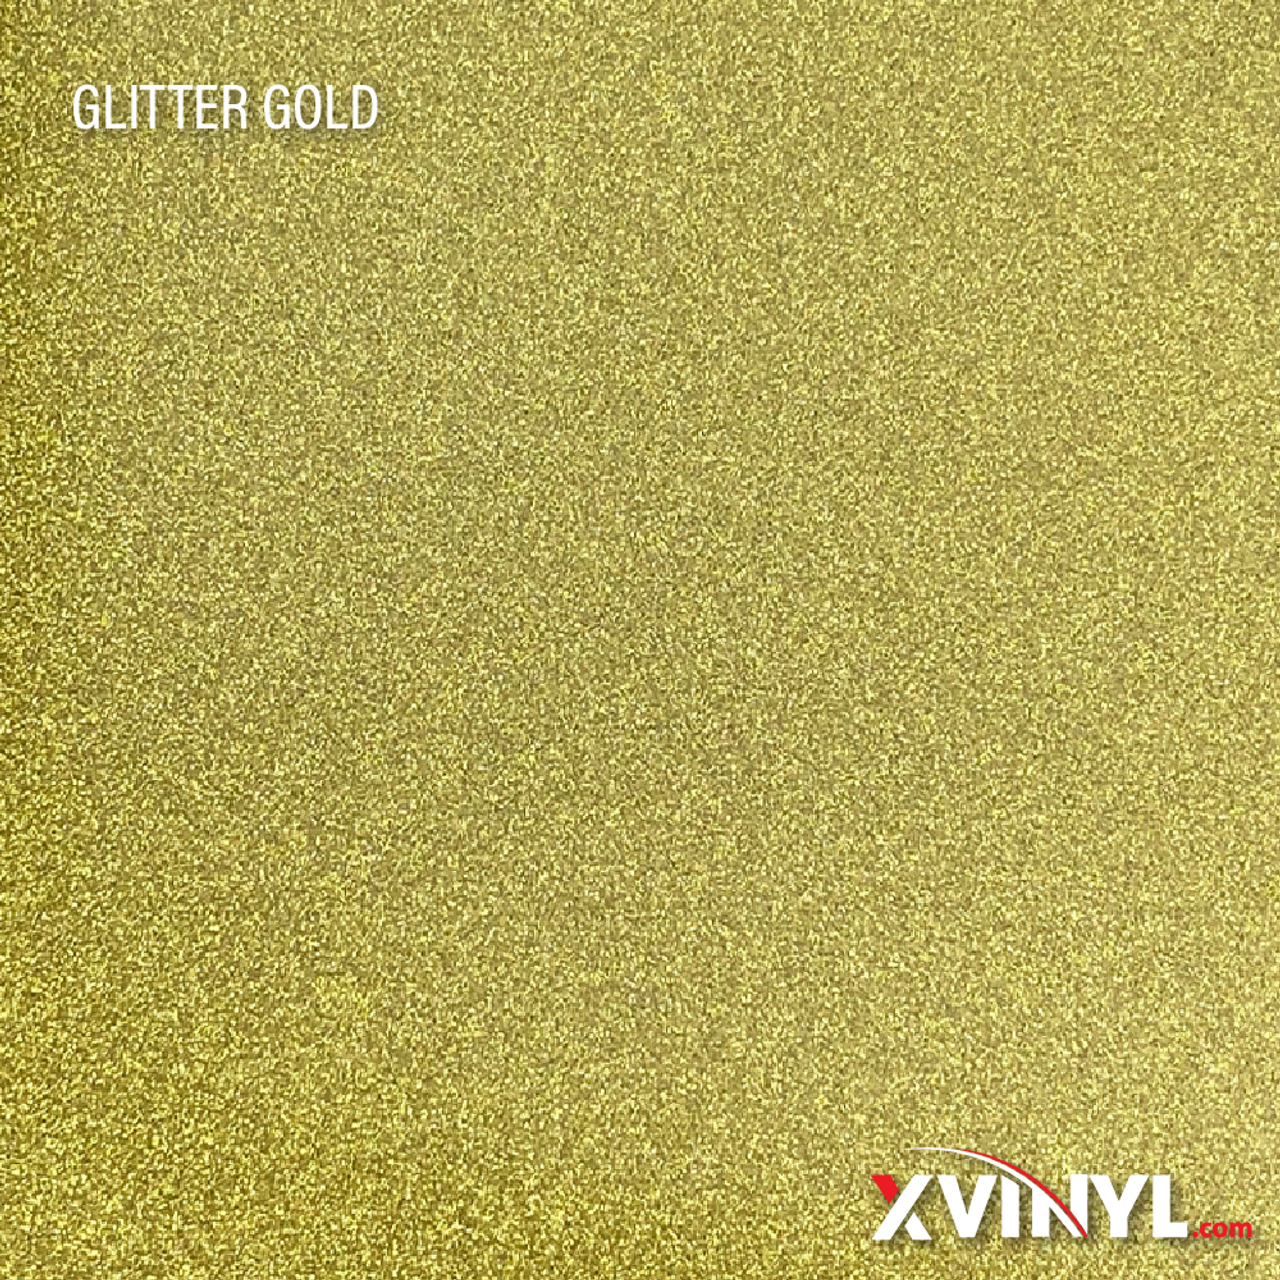 XVinyl Glitter HTV Gold